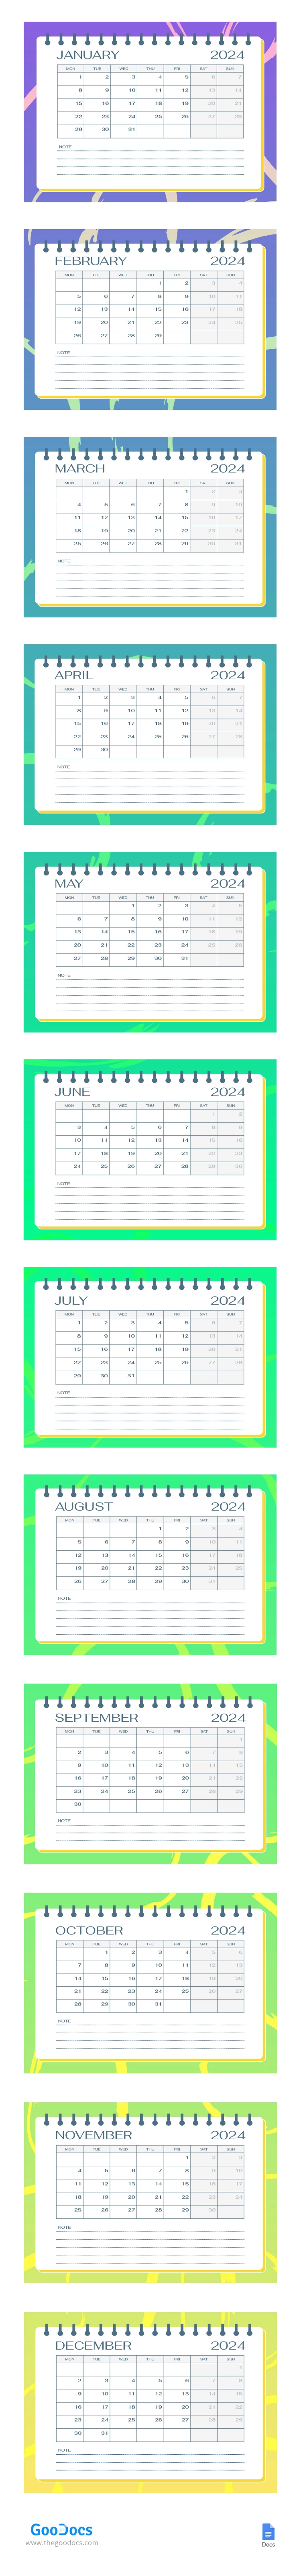 Calendario scolastico vivace e colorato - free Google Docs Template - 10067274